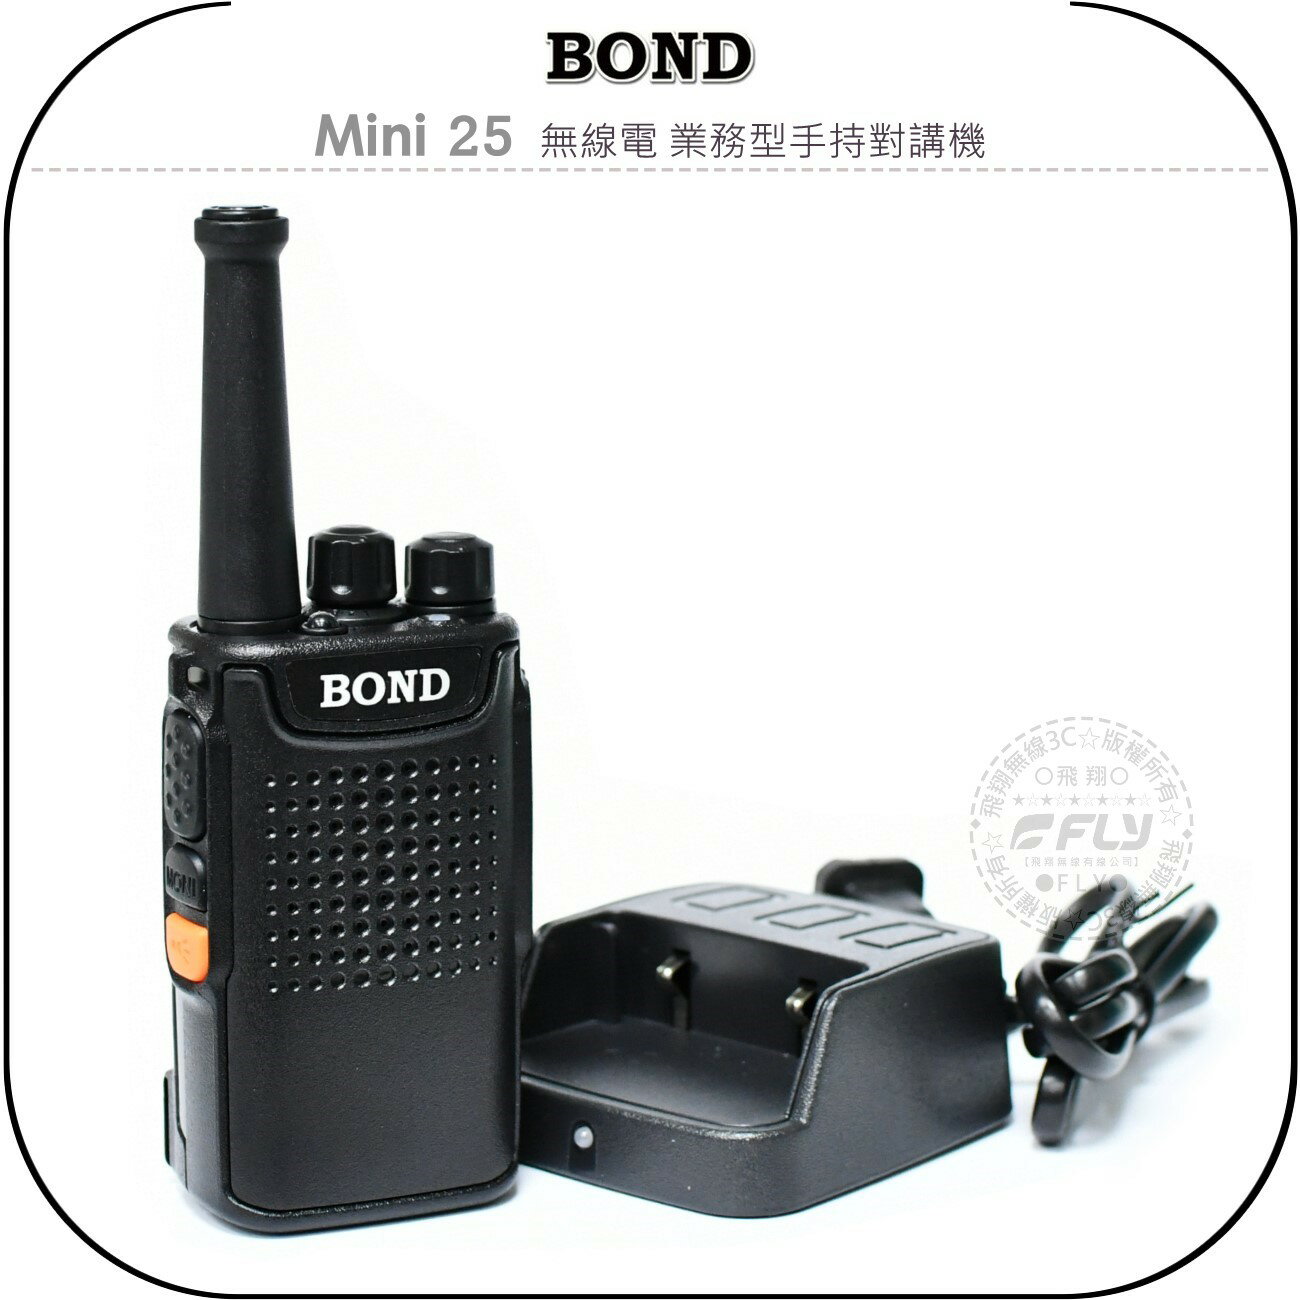 《飛翔無線3C》BOND Mini 25 無線電 業務型手持對講機￨公司貨￨長時待機 小體積超迷你 活動連繫 登山露營